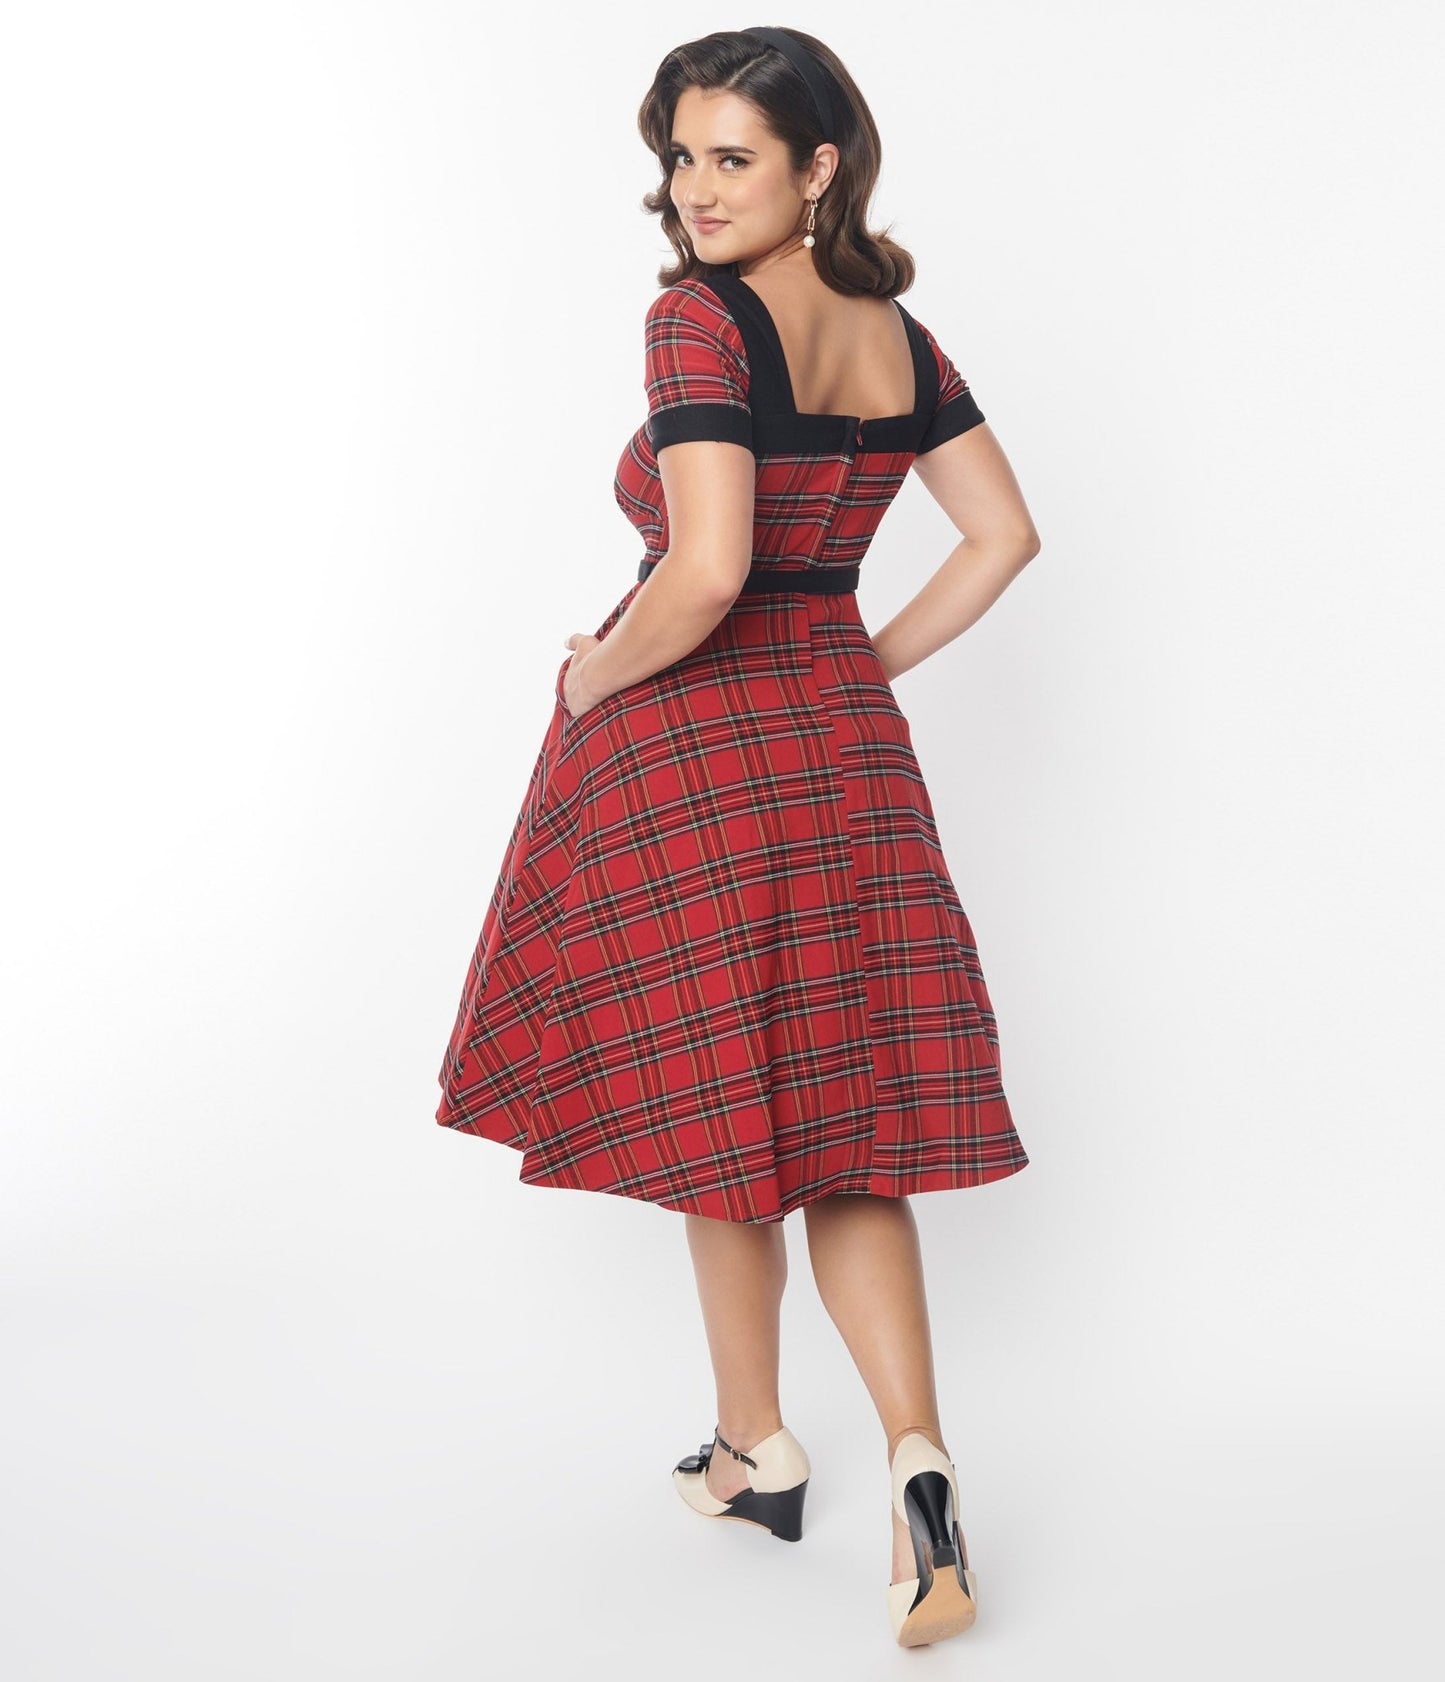 https://www.unique-vintage.com/cdn/shop/products/unique-vintage-red-tartan-plaid-swing-dress-451324.jpg?v=1703100615&width=1445